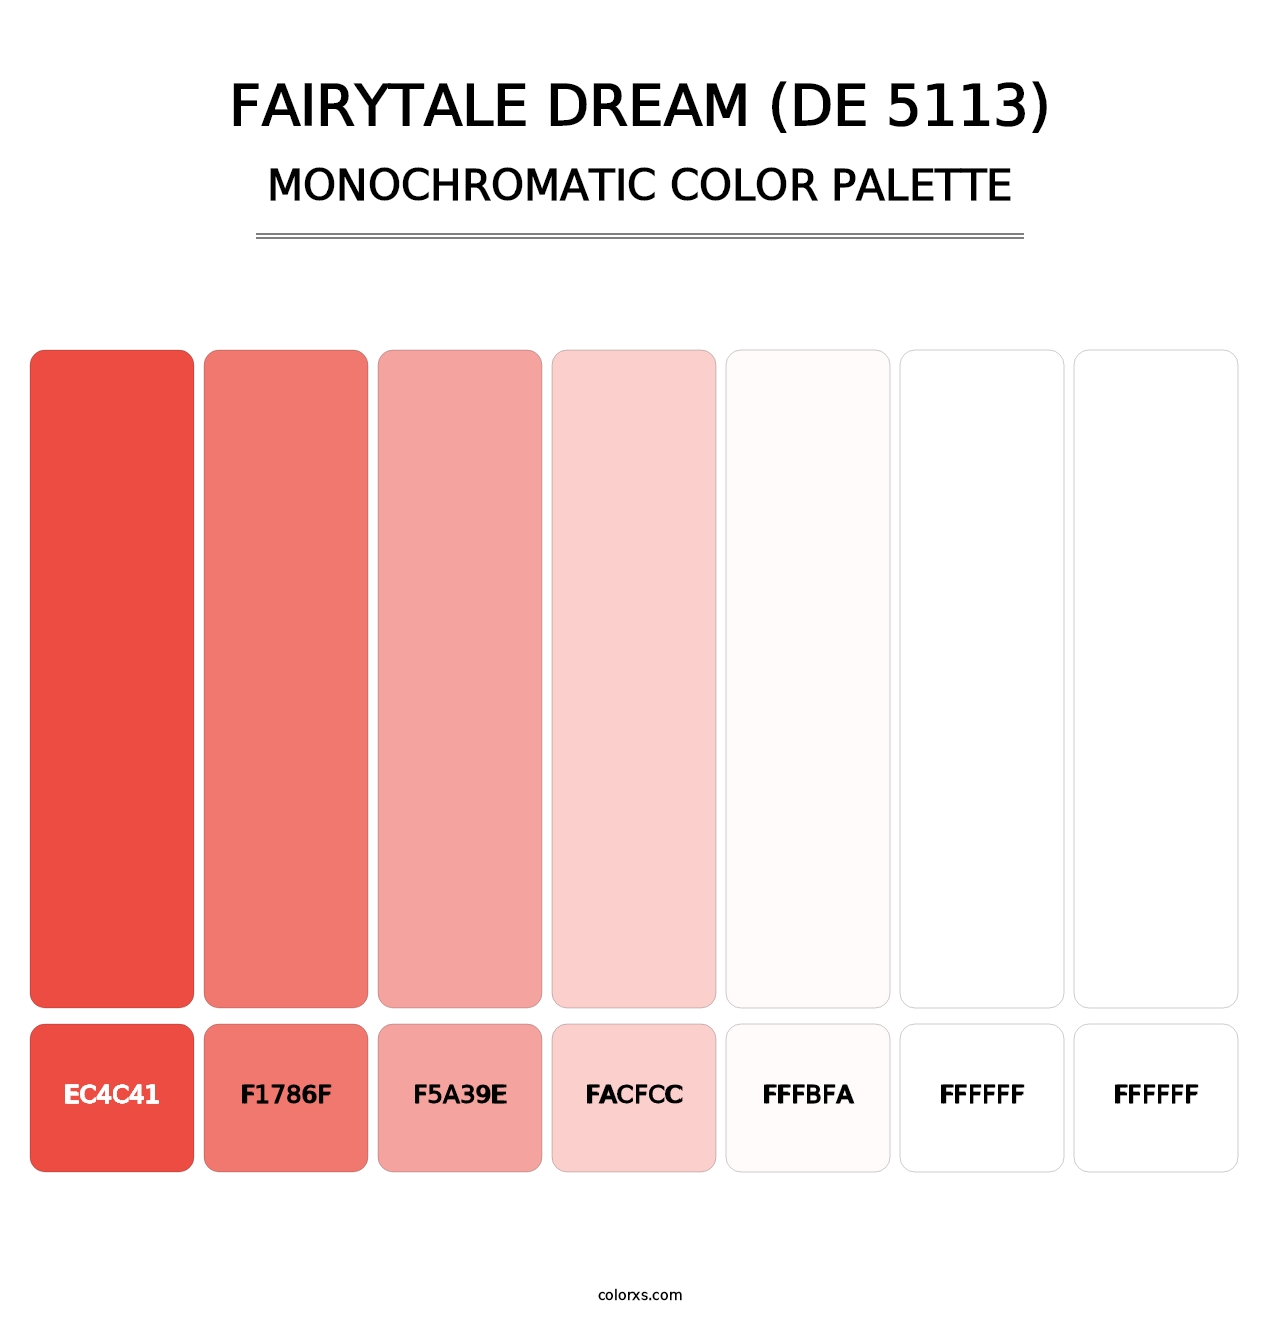 Fairytale Dream (DE 5113) - Monochromatic Color Palette